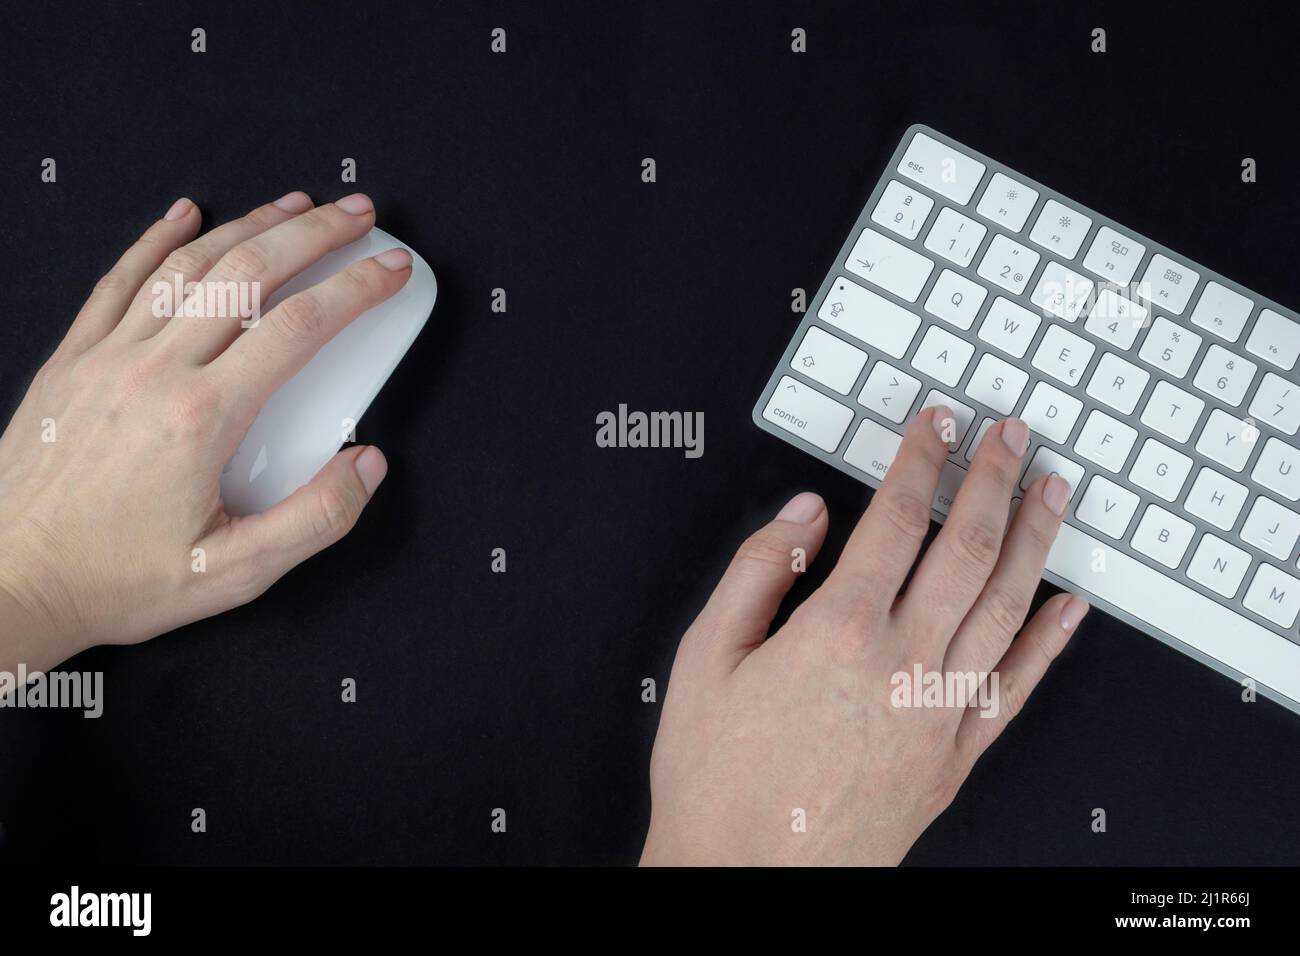 Une femme gaucher tient une souris d'ordinateur dans sa main gauche. Clavier  blanc et argent sur fond noir Photo Stock - Alamy